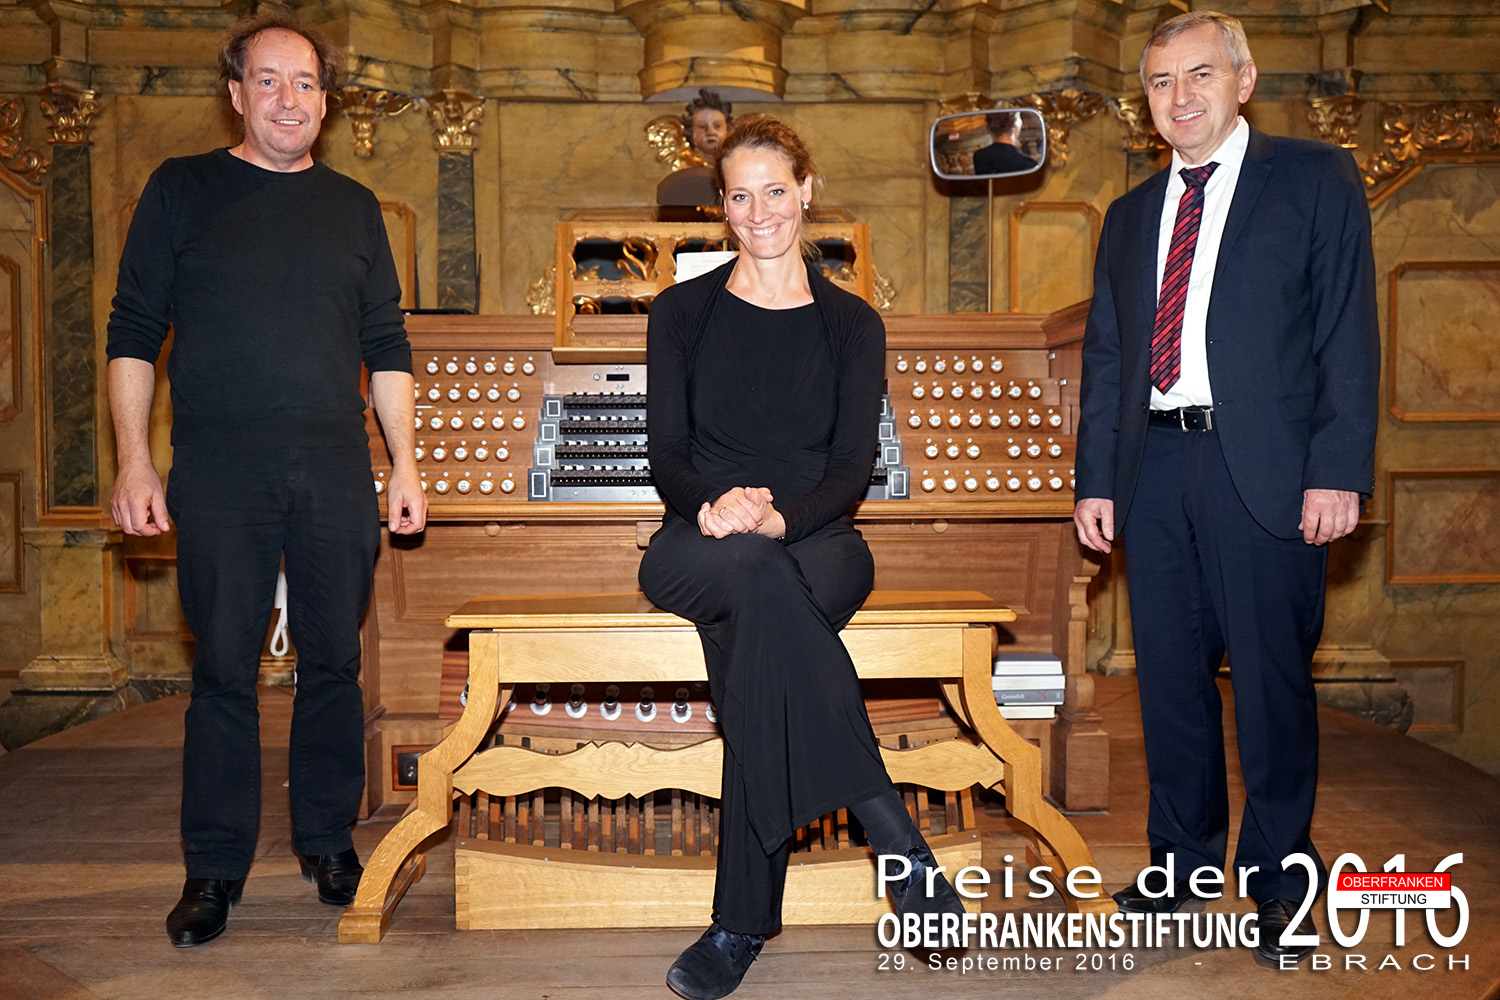 von links: Thomas Böhm, Ingrid Kasper, Georg Schäffner, Organisten